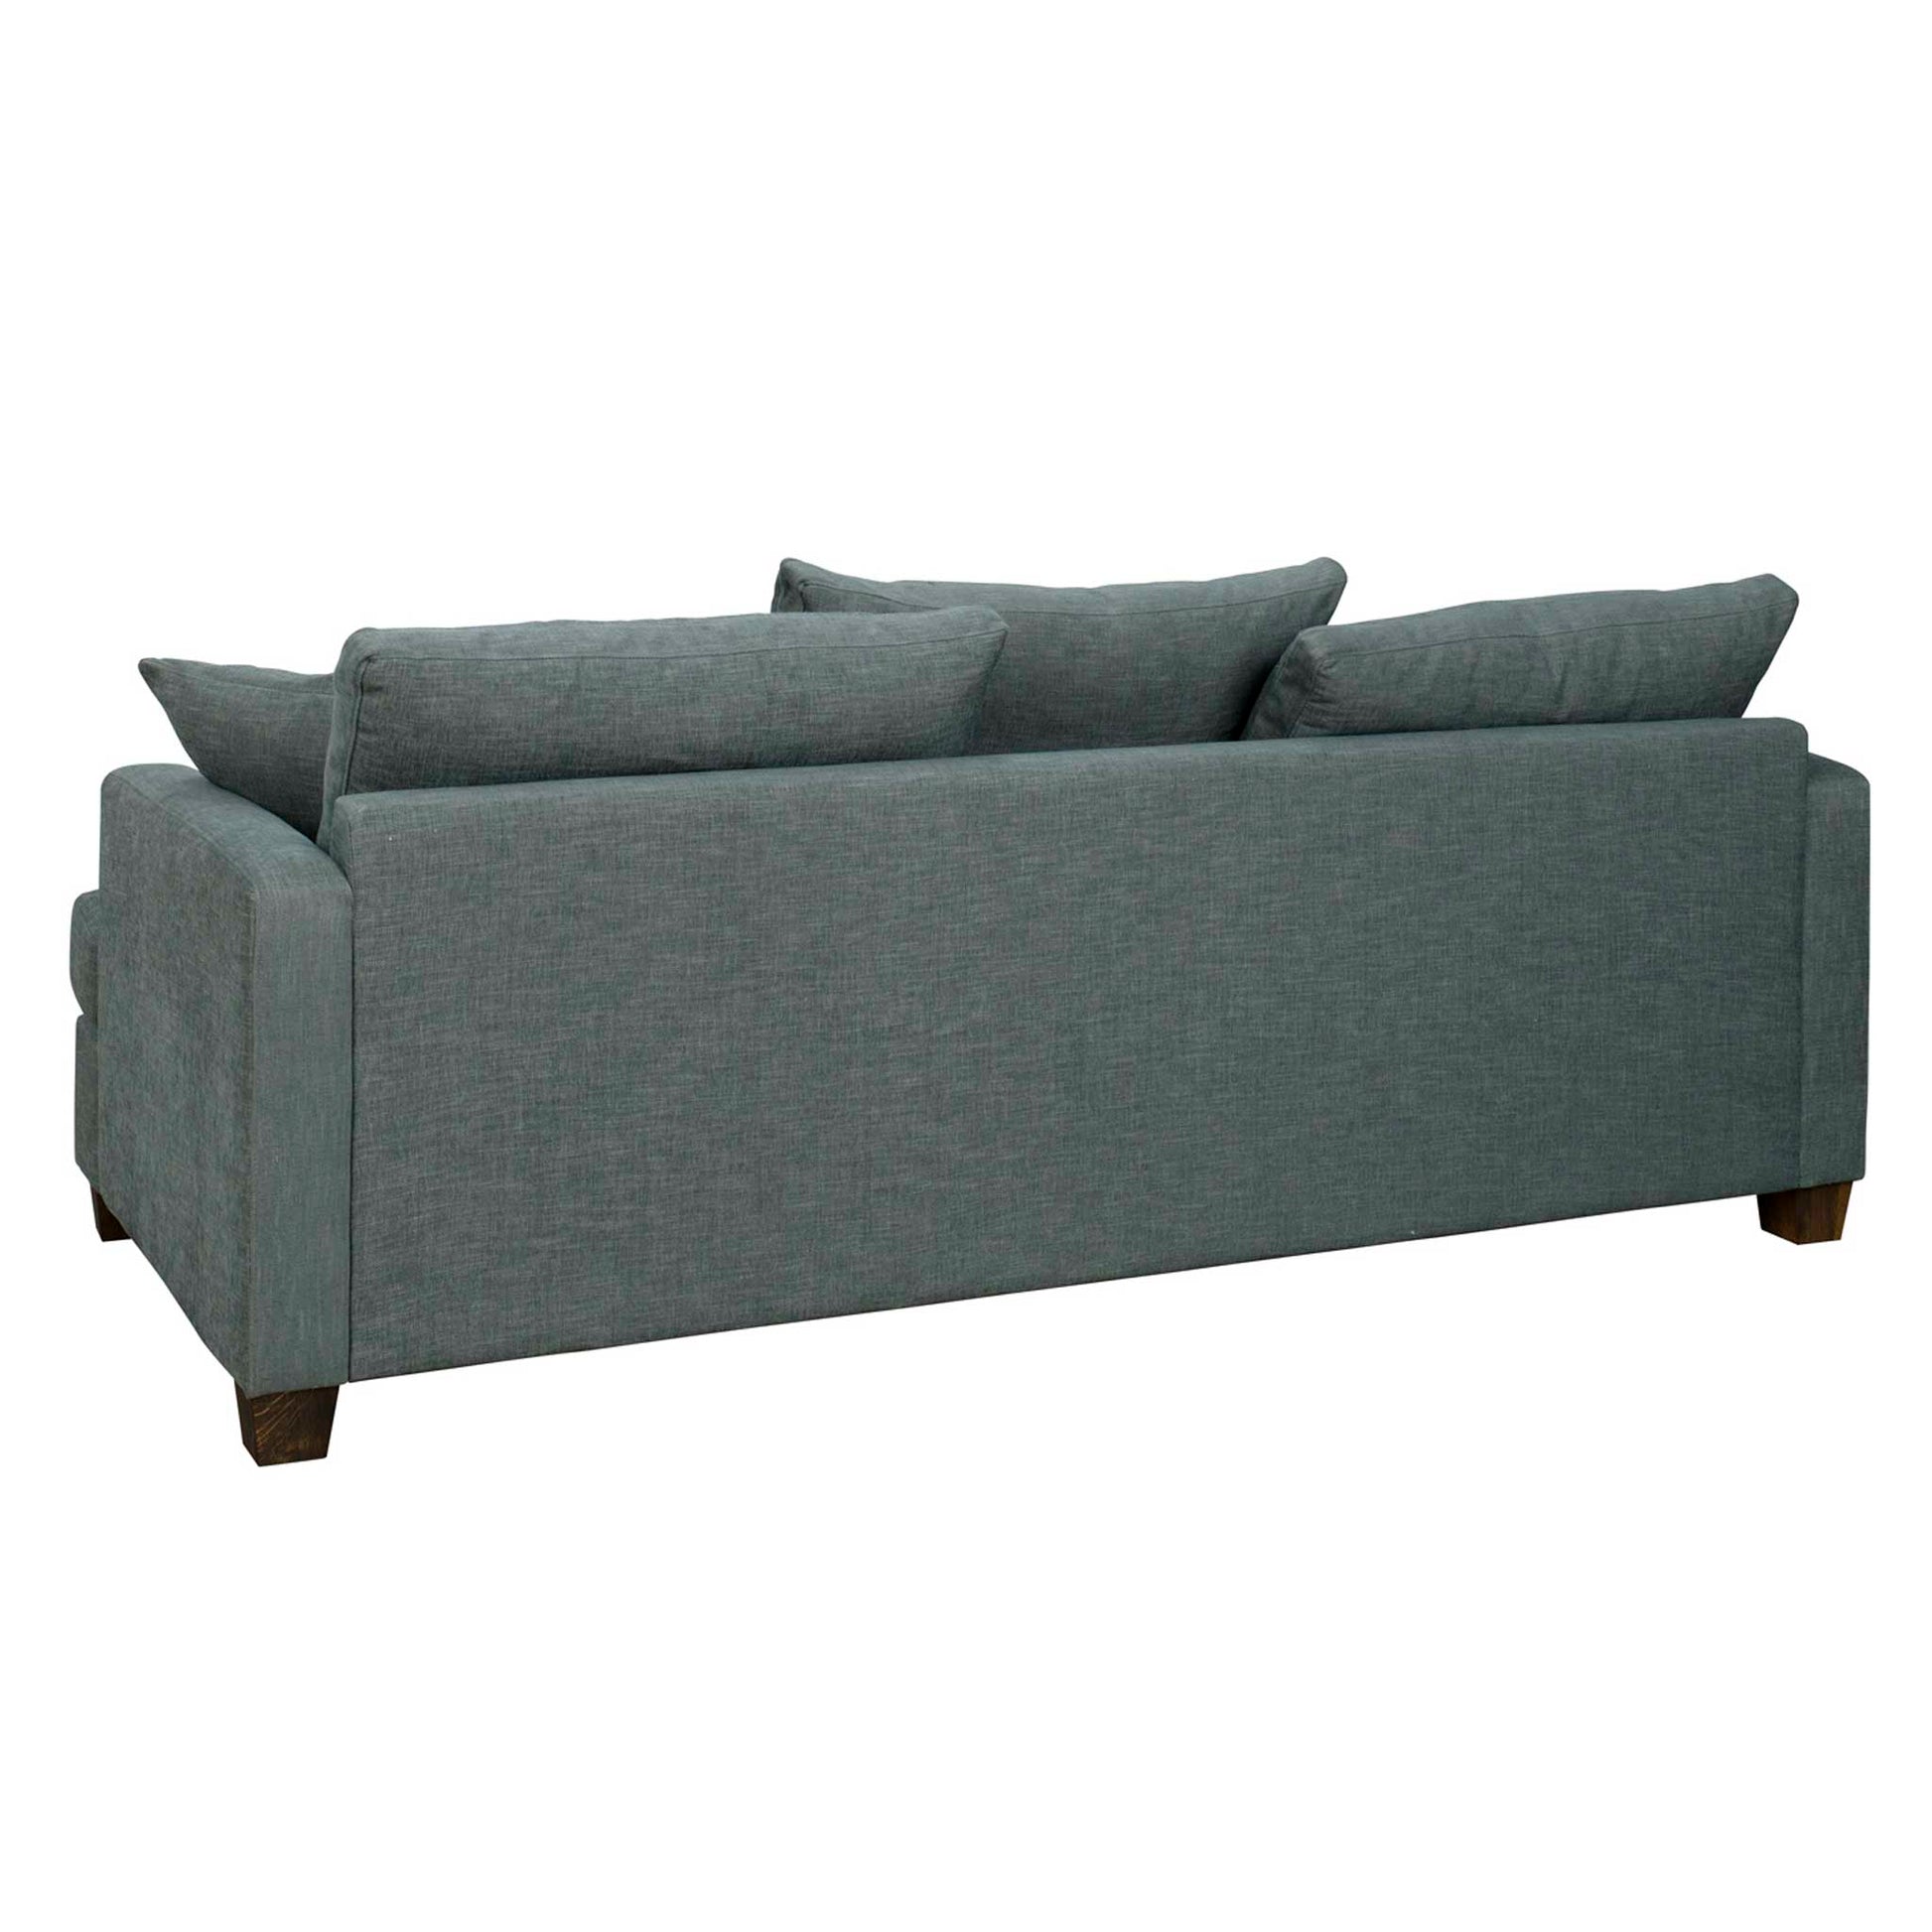 Snygg, djup och komfortabel 3-sitssoffa i grågrönt tyg